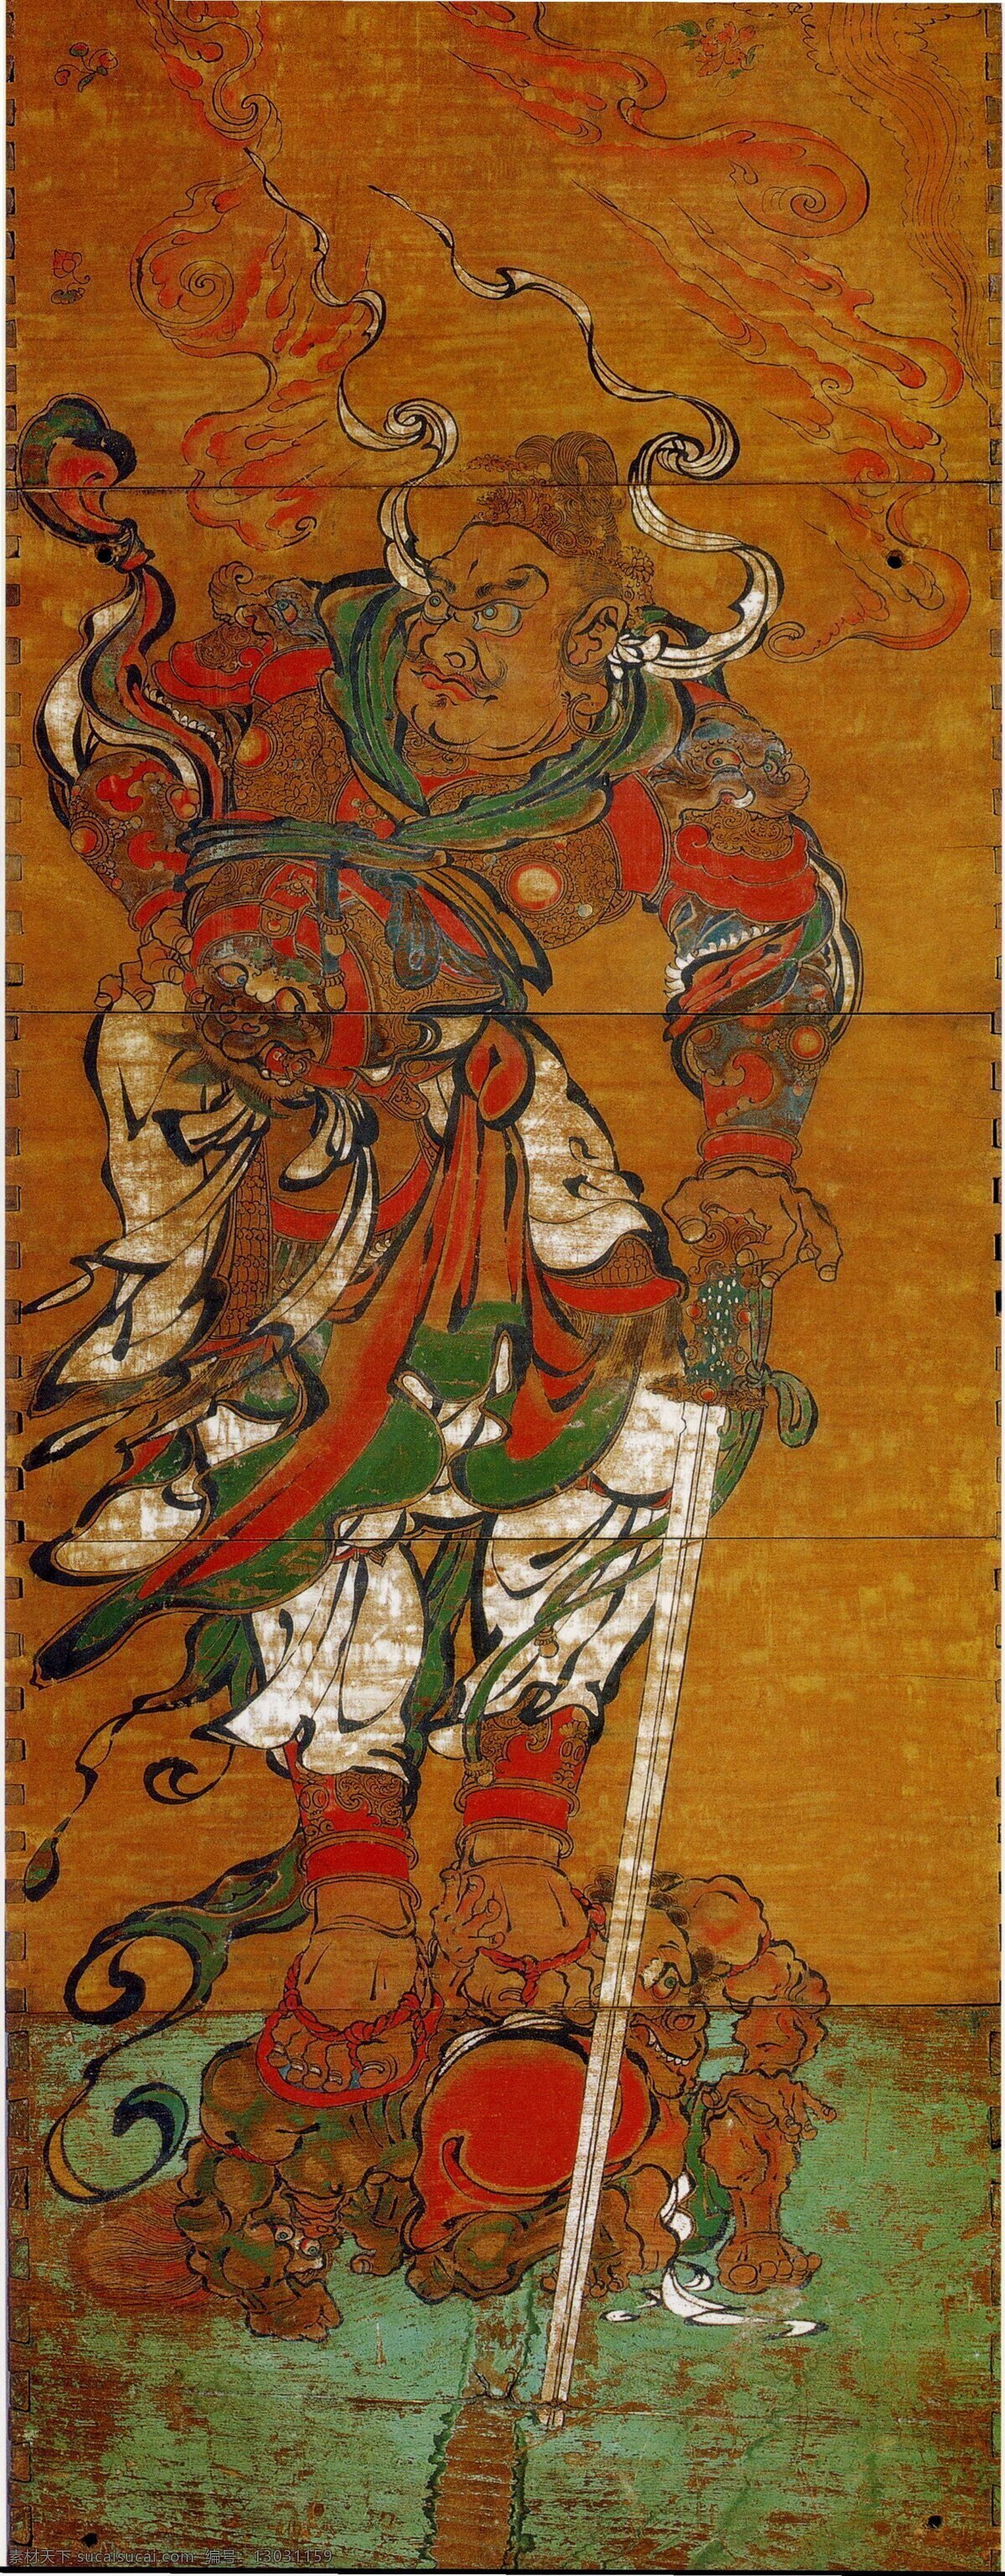 天王 壁画 苏州 文化艺术 宗教信仰 天王像 瑞光塔 云岩寺